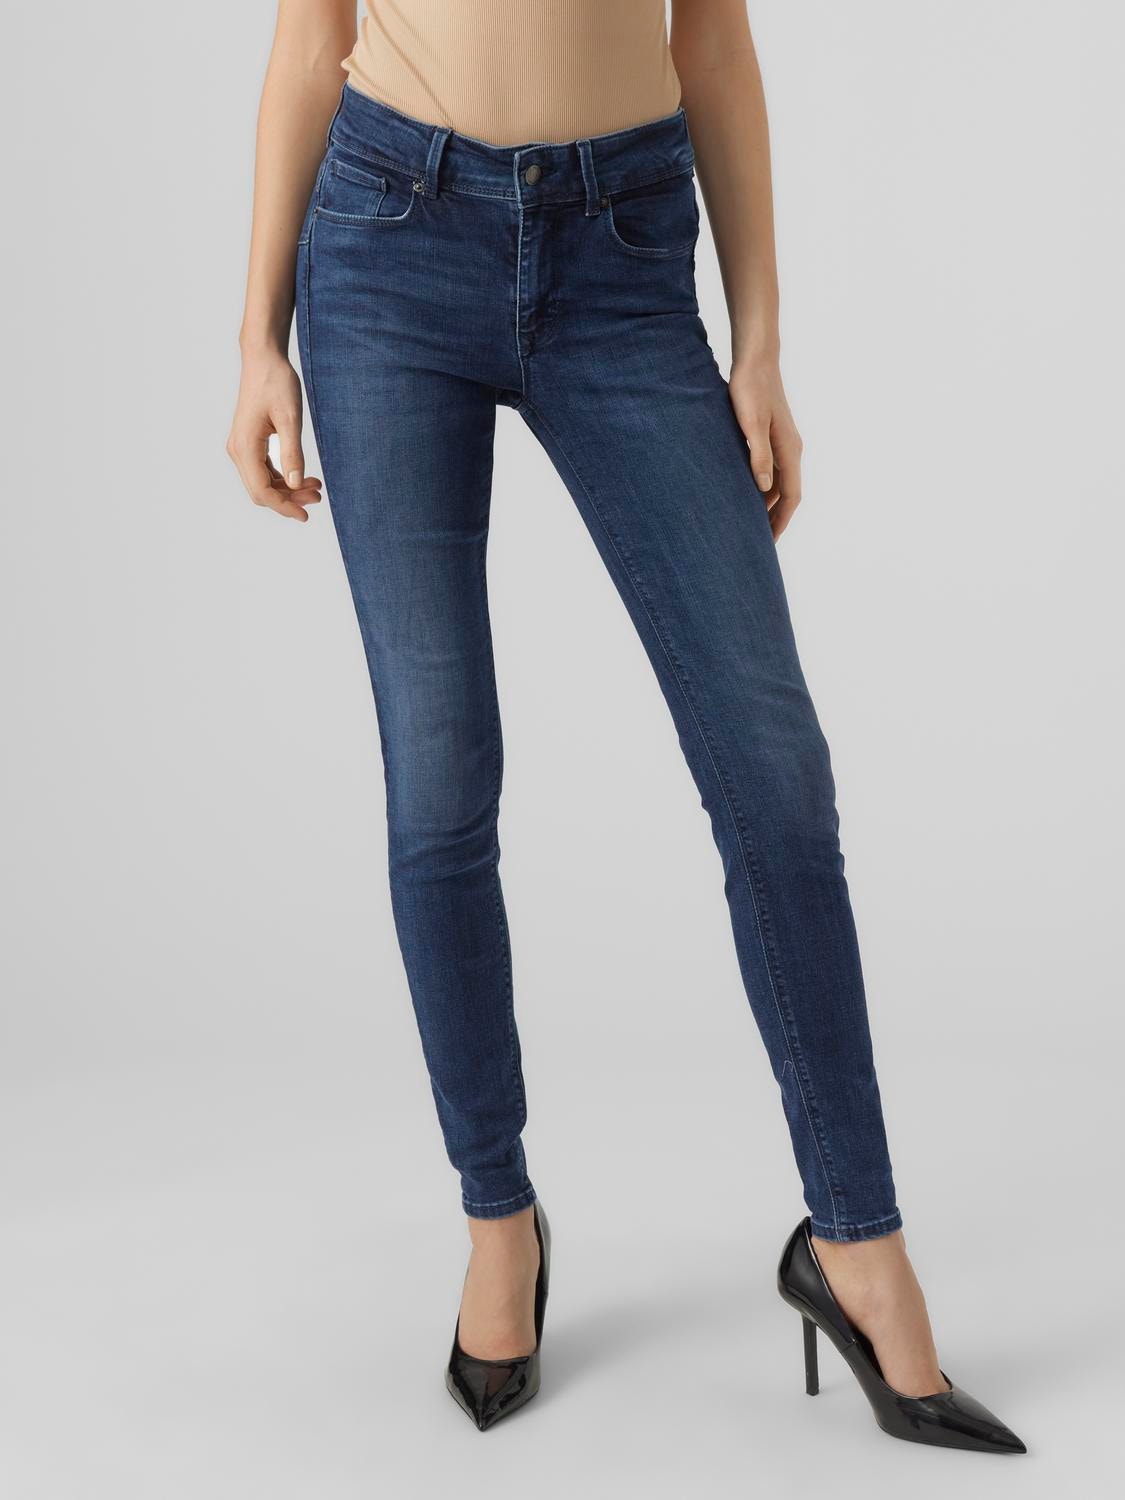 Vero Moda VMEMBRACE Krój skinny Jeans -Dark Blue Denim - 10285018